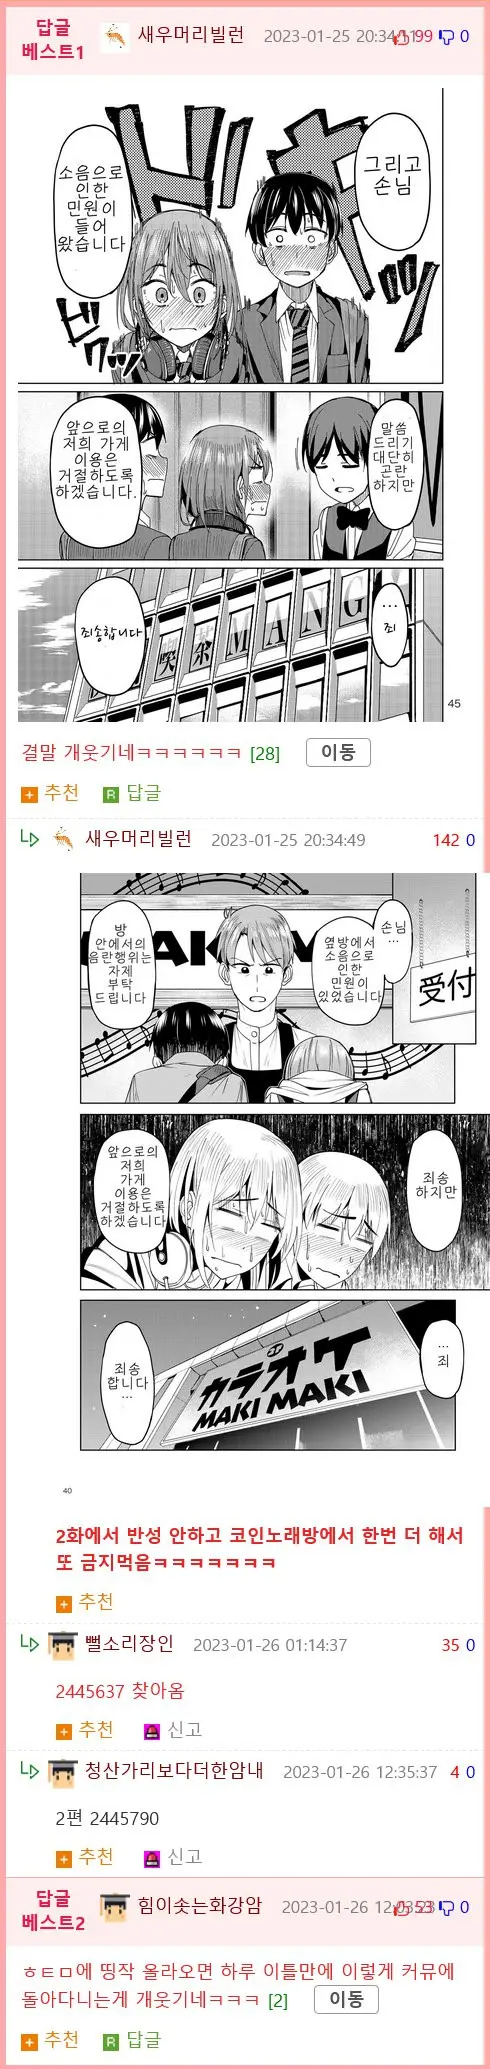 19) 친구사귄 아싸랑 만화카페 가는 .manhwa | mbong.kr 엠봉